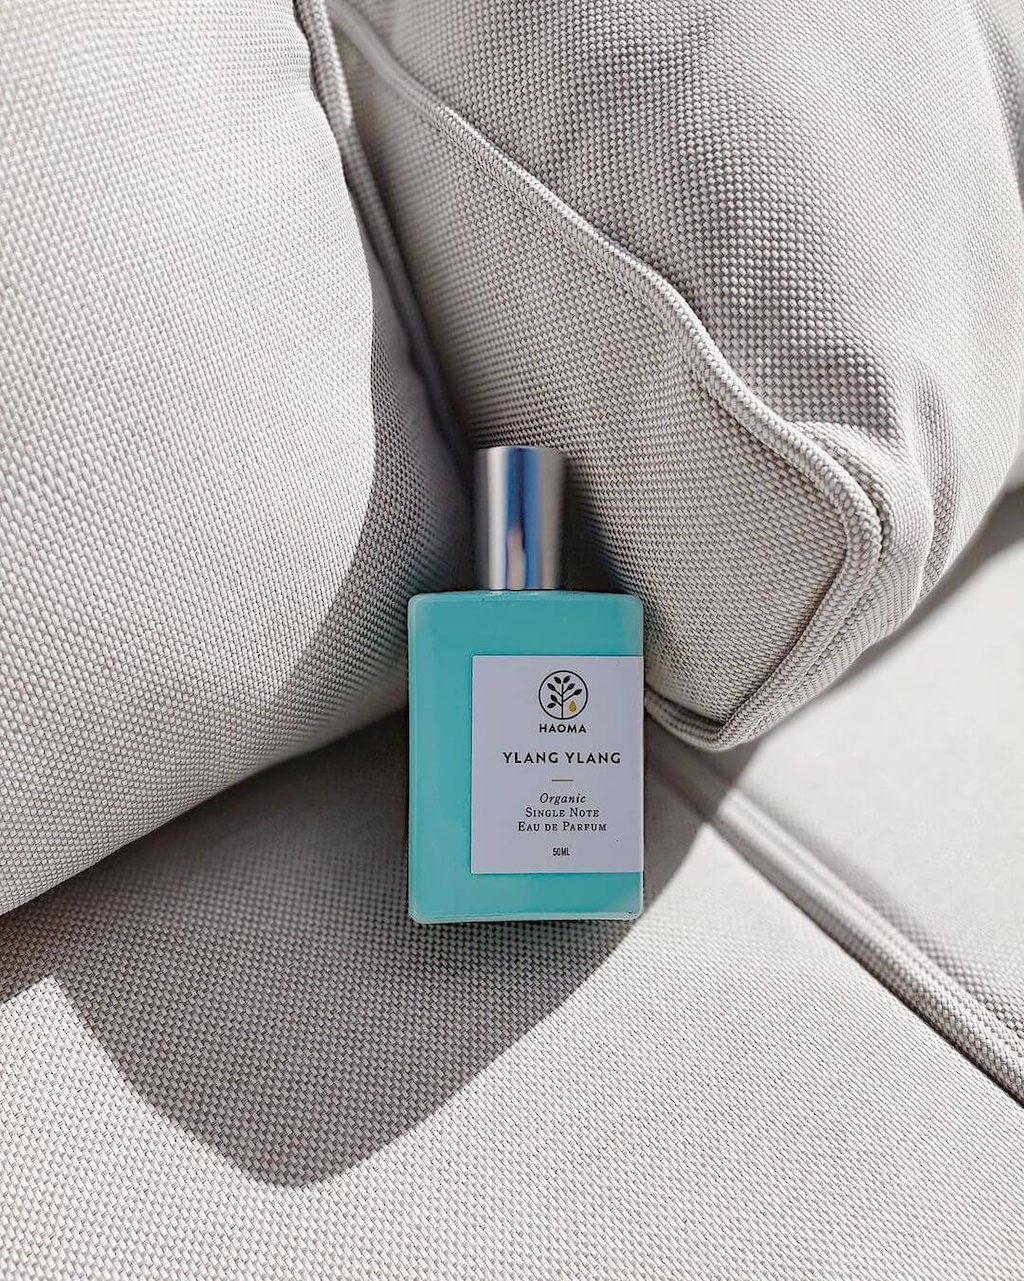 Haoma Organic Eau de Parfum. Certified organic eau de parfum. The Ylang Ylang bottle is shown on some grey sofa cushions in the sun.